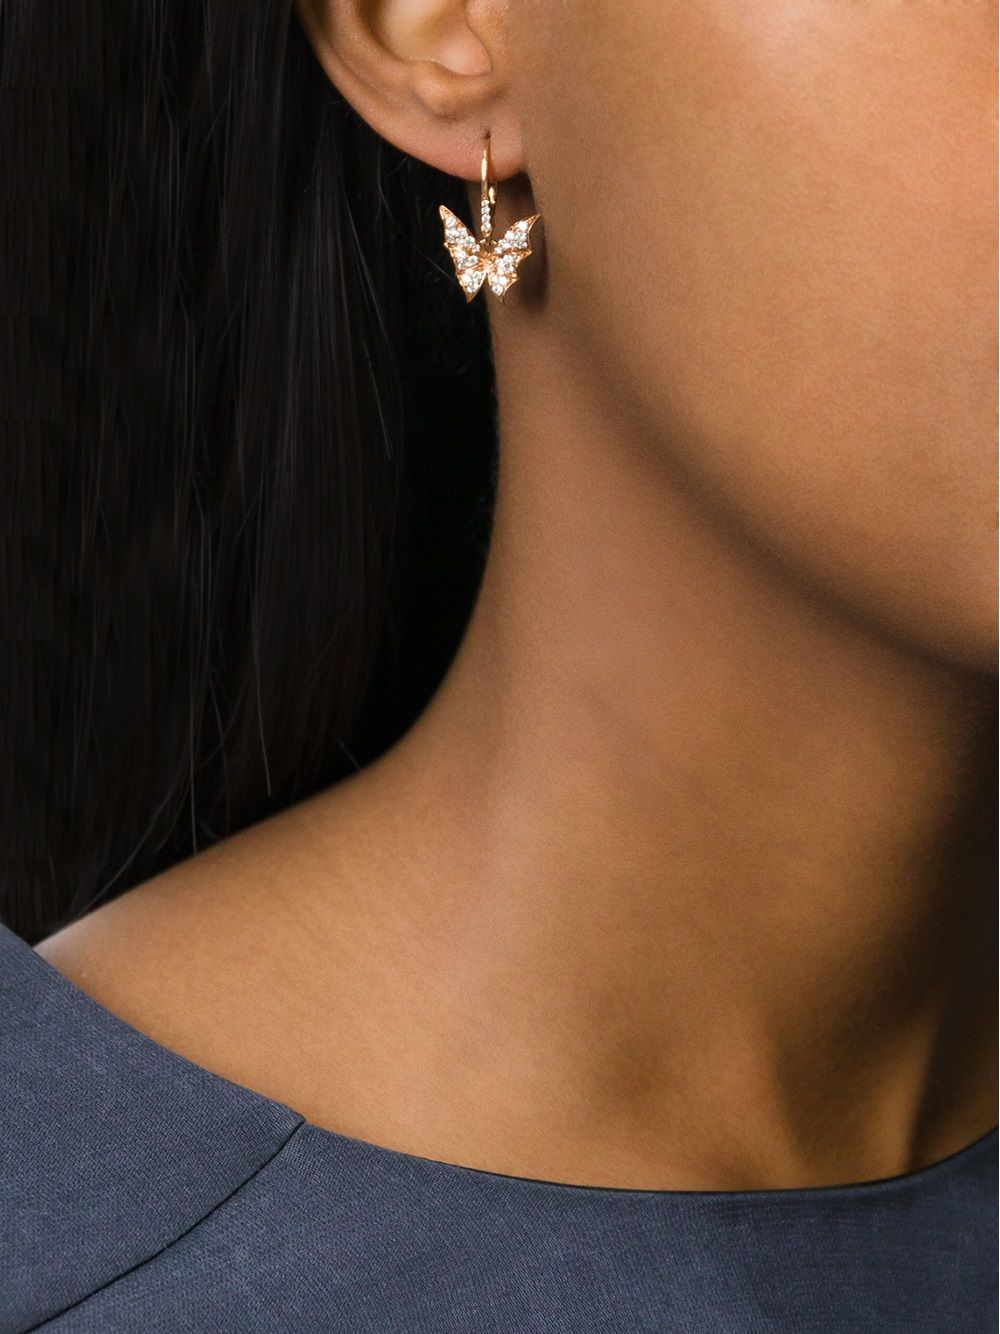 Stephen Webster diamond wing earrings - Metallic